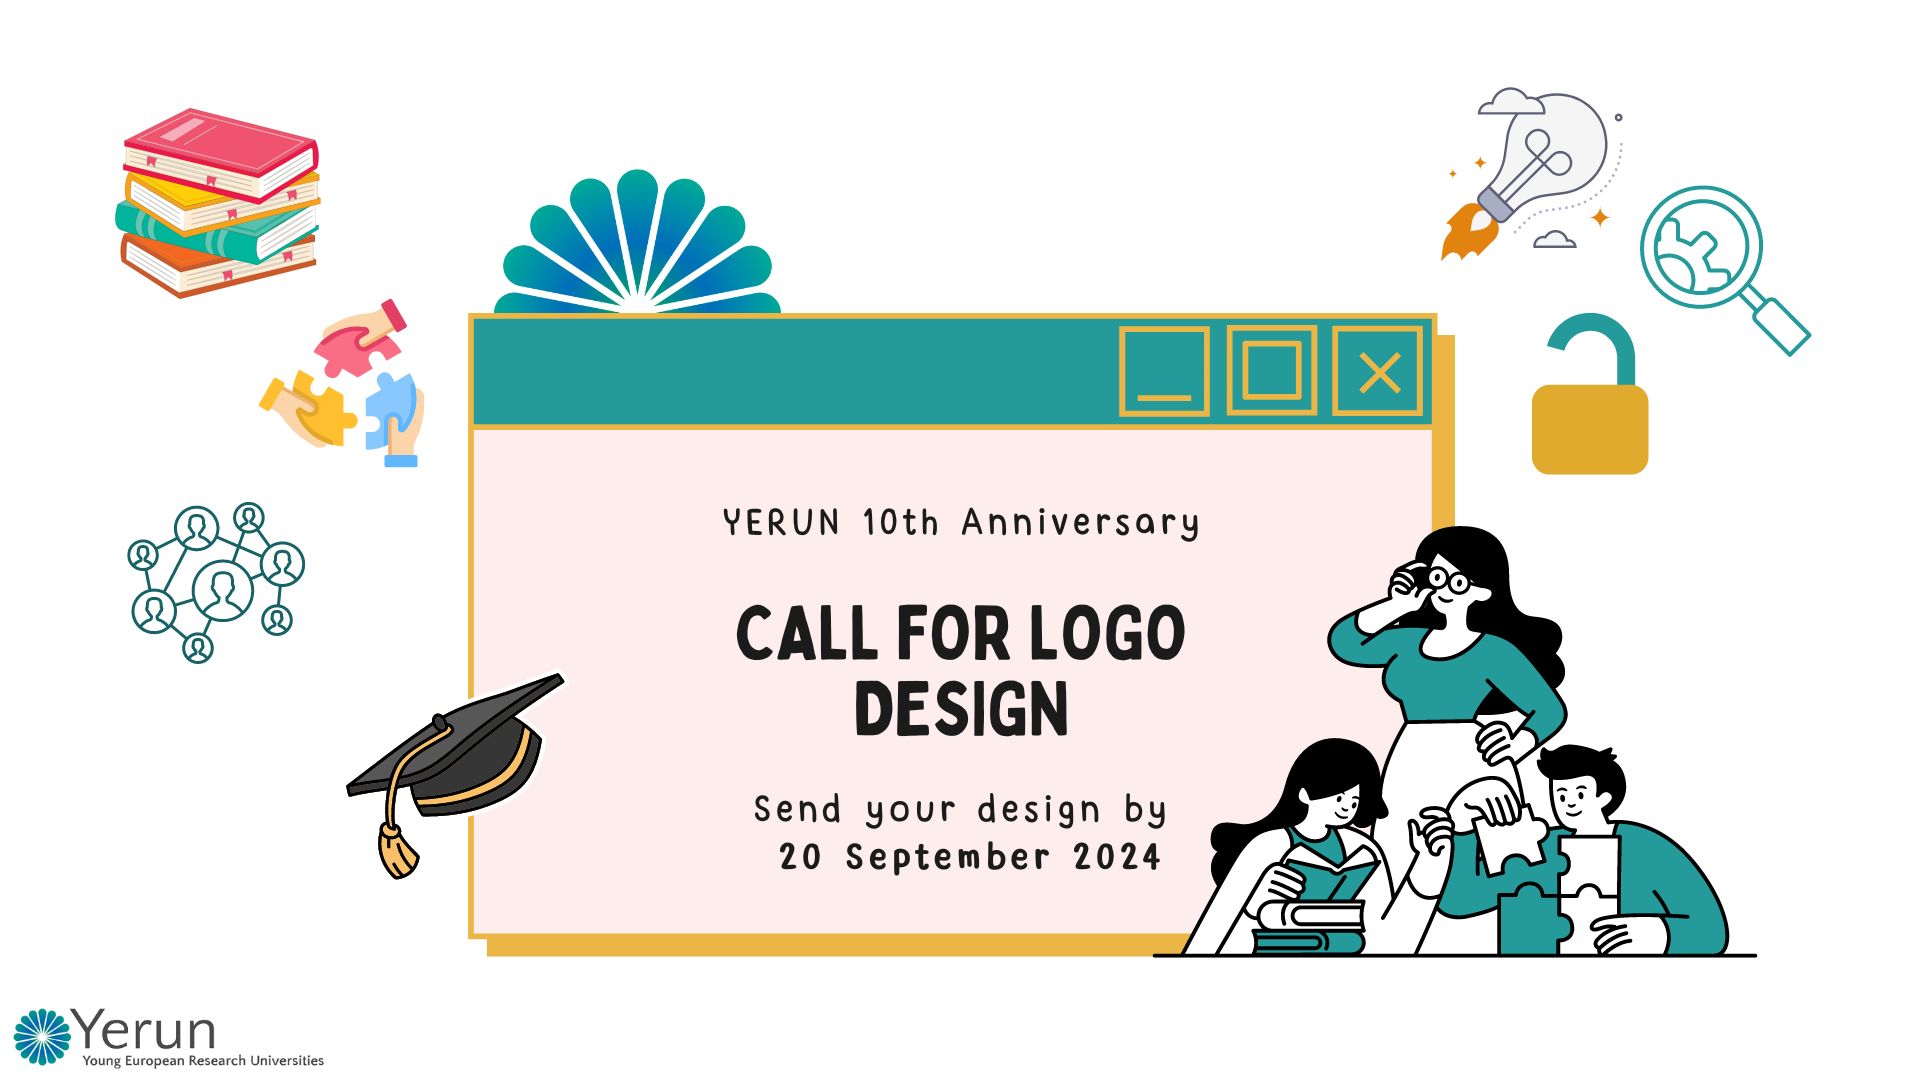 YERUN - call for anniversary logo